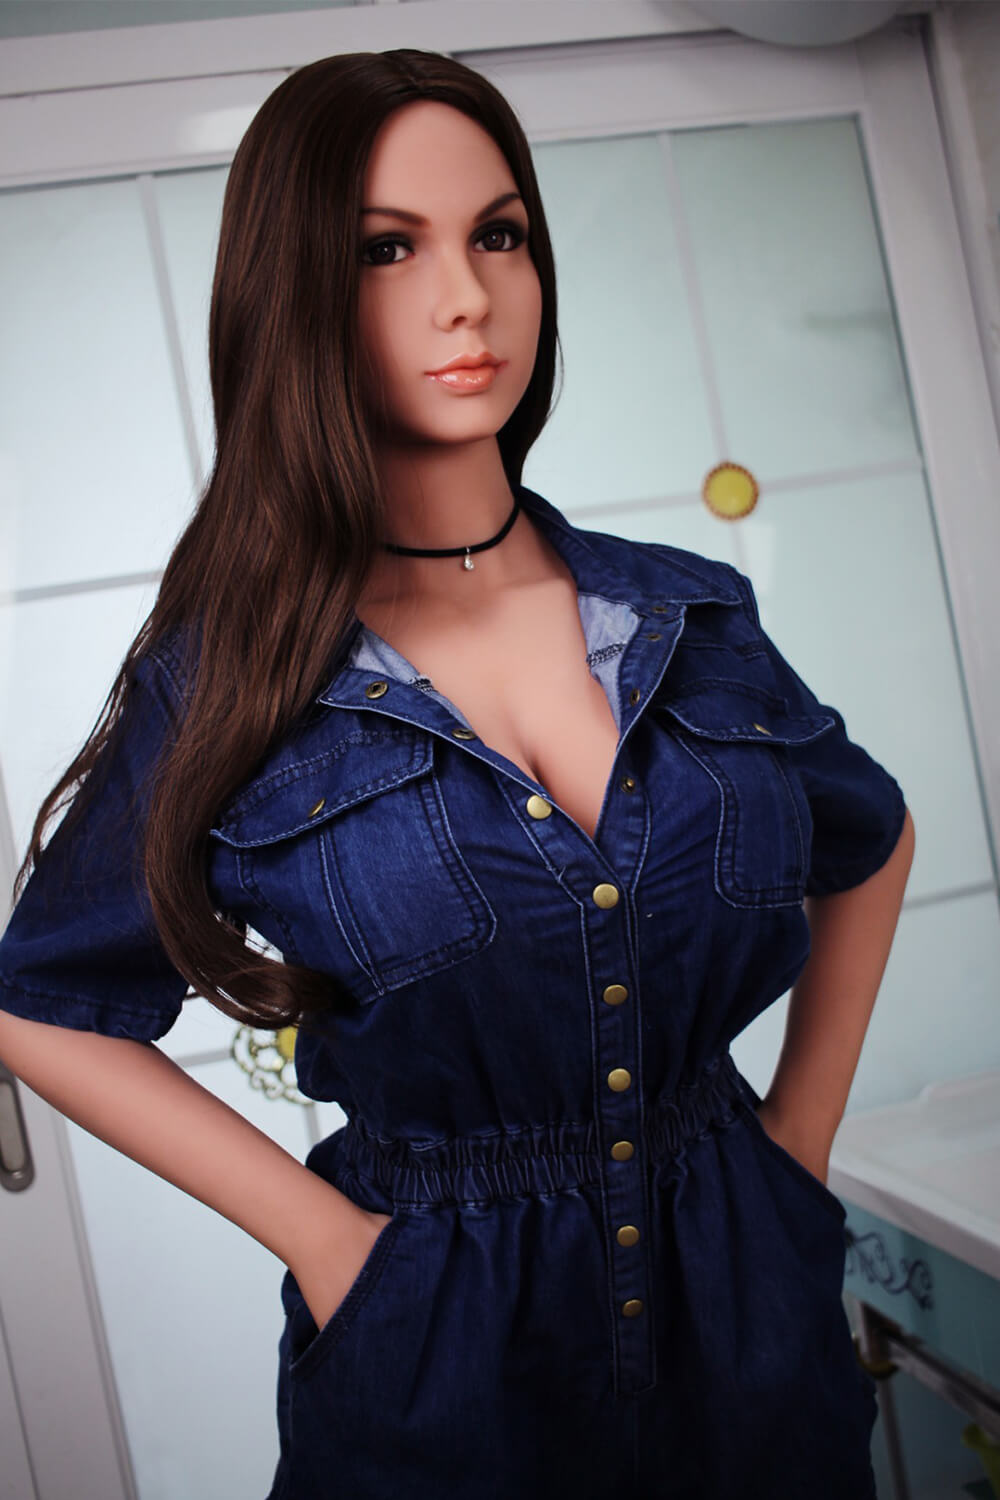 Black long hair girl sex doll